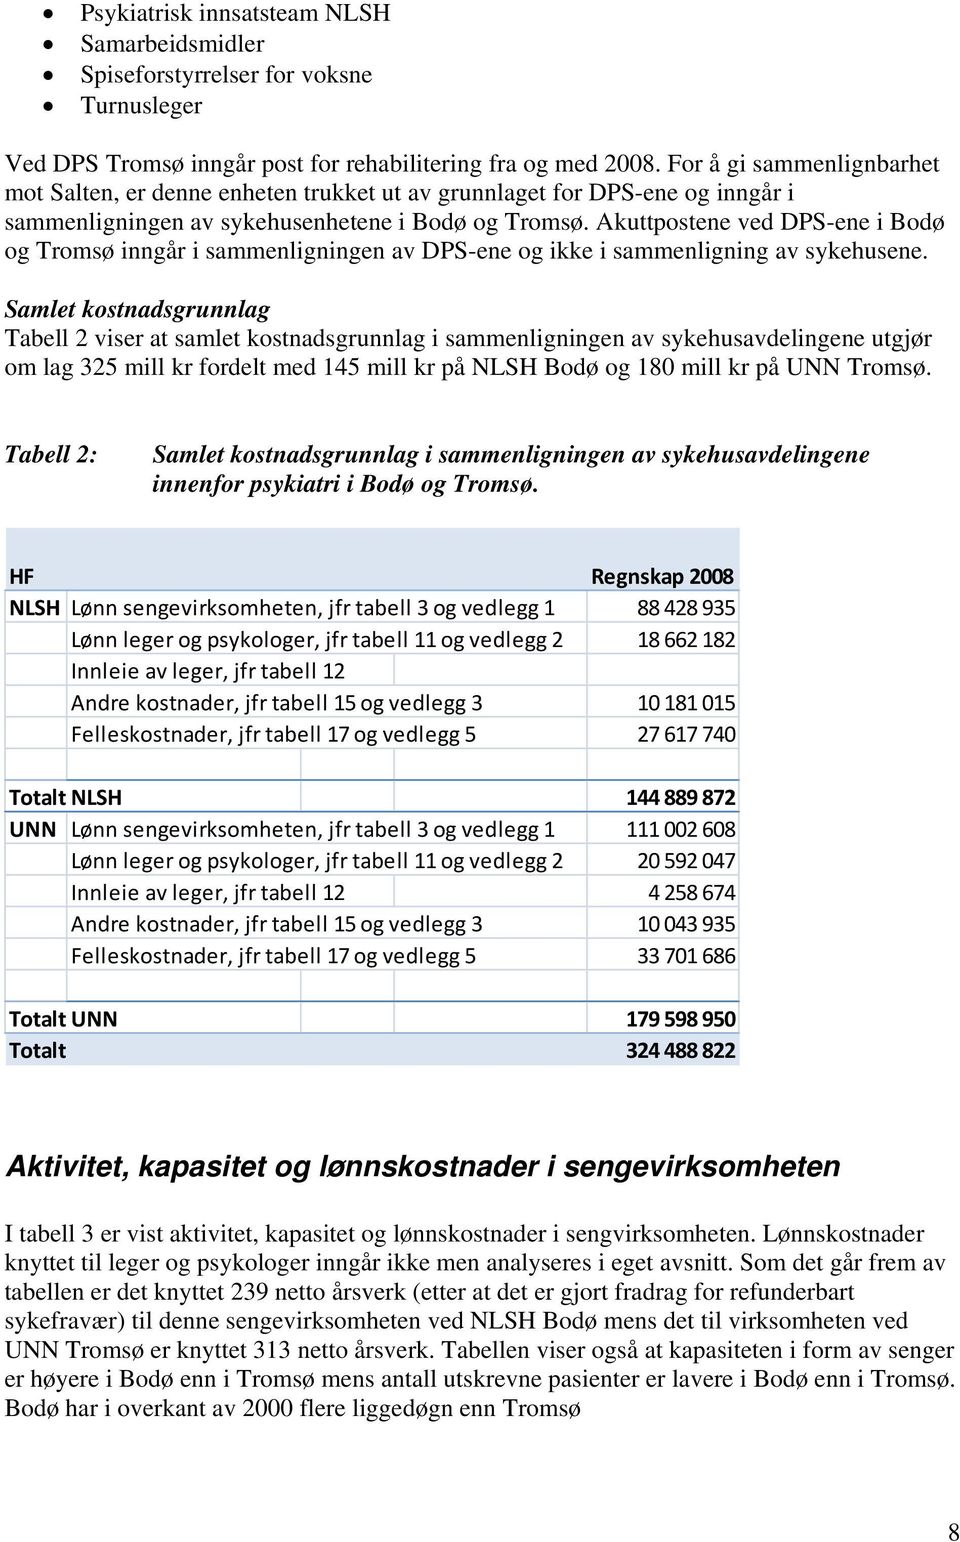 Akuttpostene ved DPS-ene i Bodø og Tromsø inngår i sammenligningen av DPS-ene og ikke i sammenligning av sykehusene.